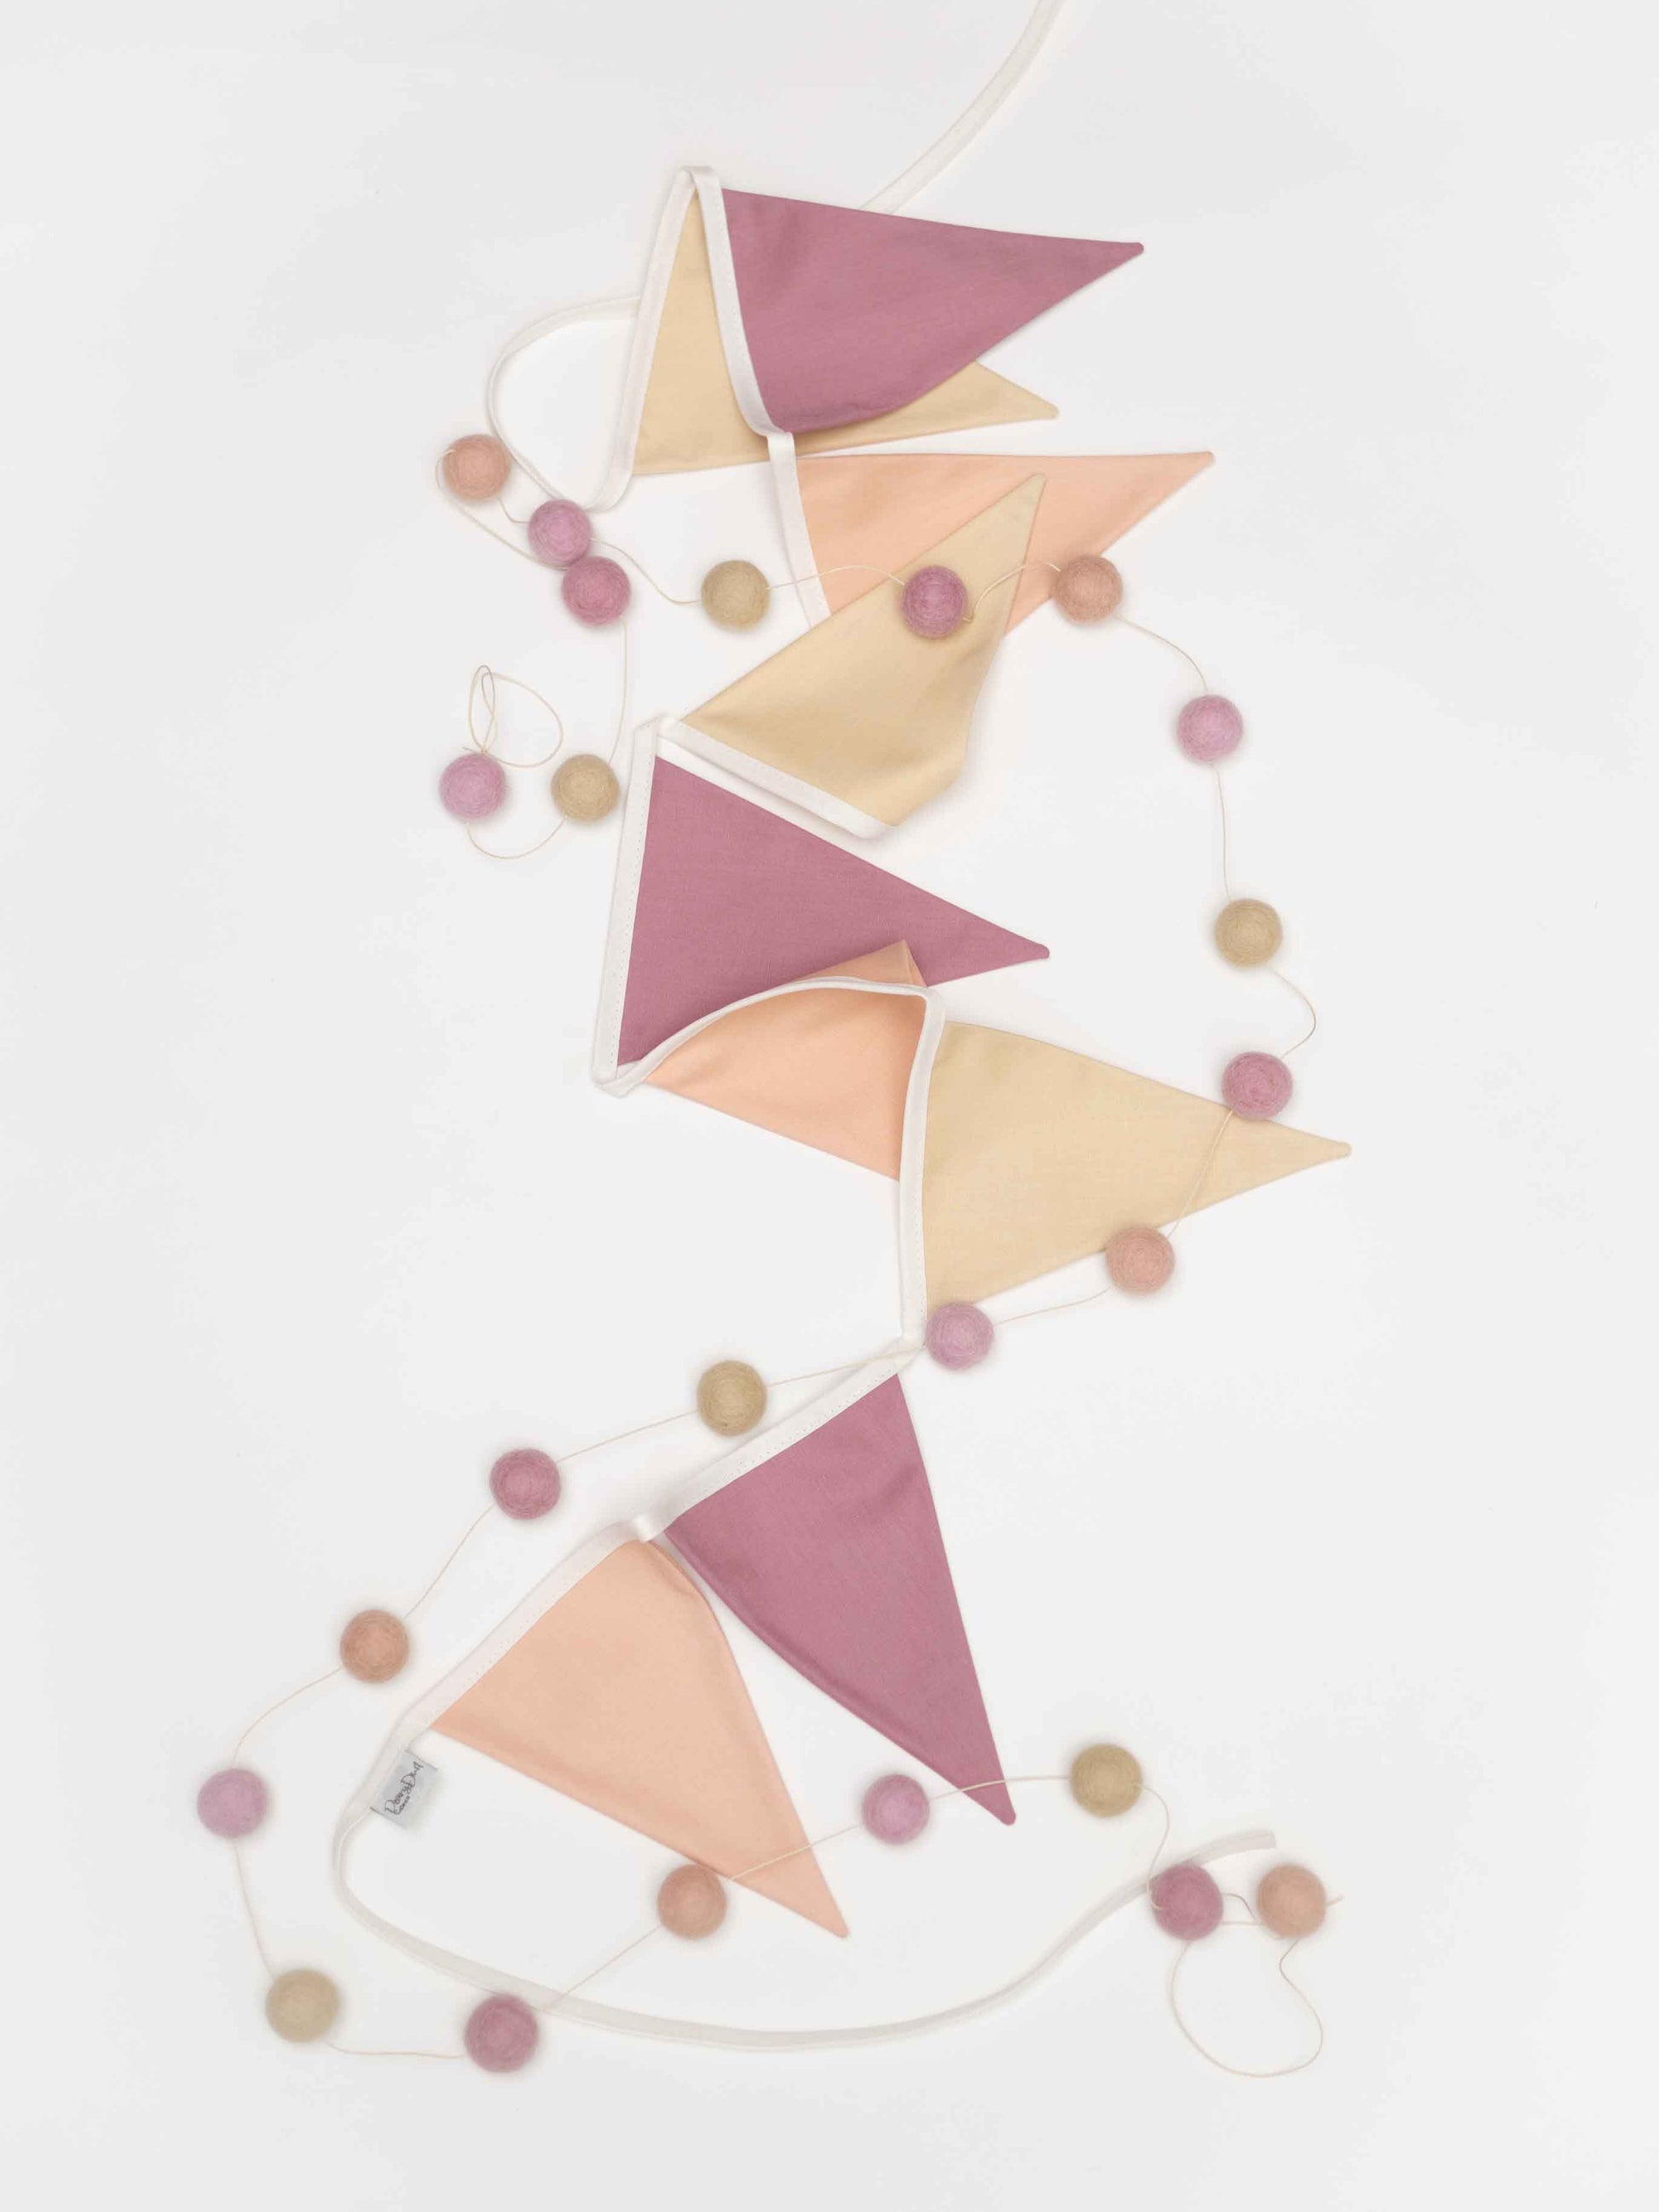 Wimpelkette aus Stoff in Rosa Sand Flieder Ansicht von oben, kombiniert mit farblich abgestimmter Filzkugel Girlande.